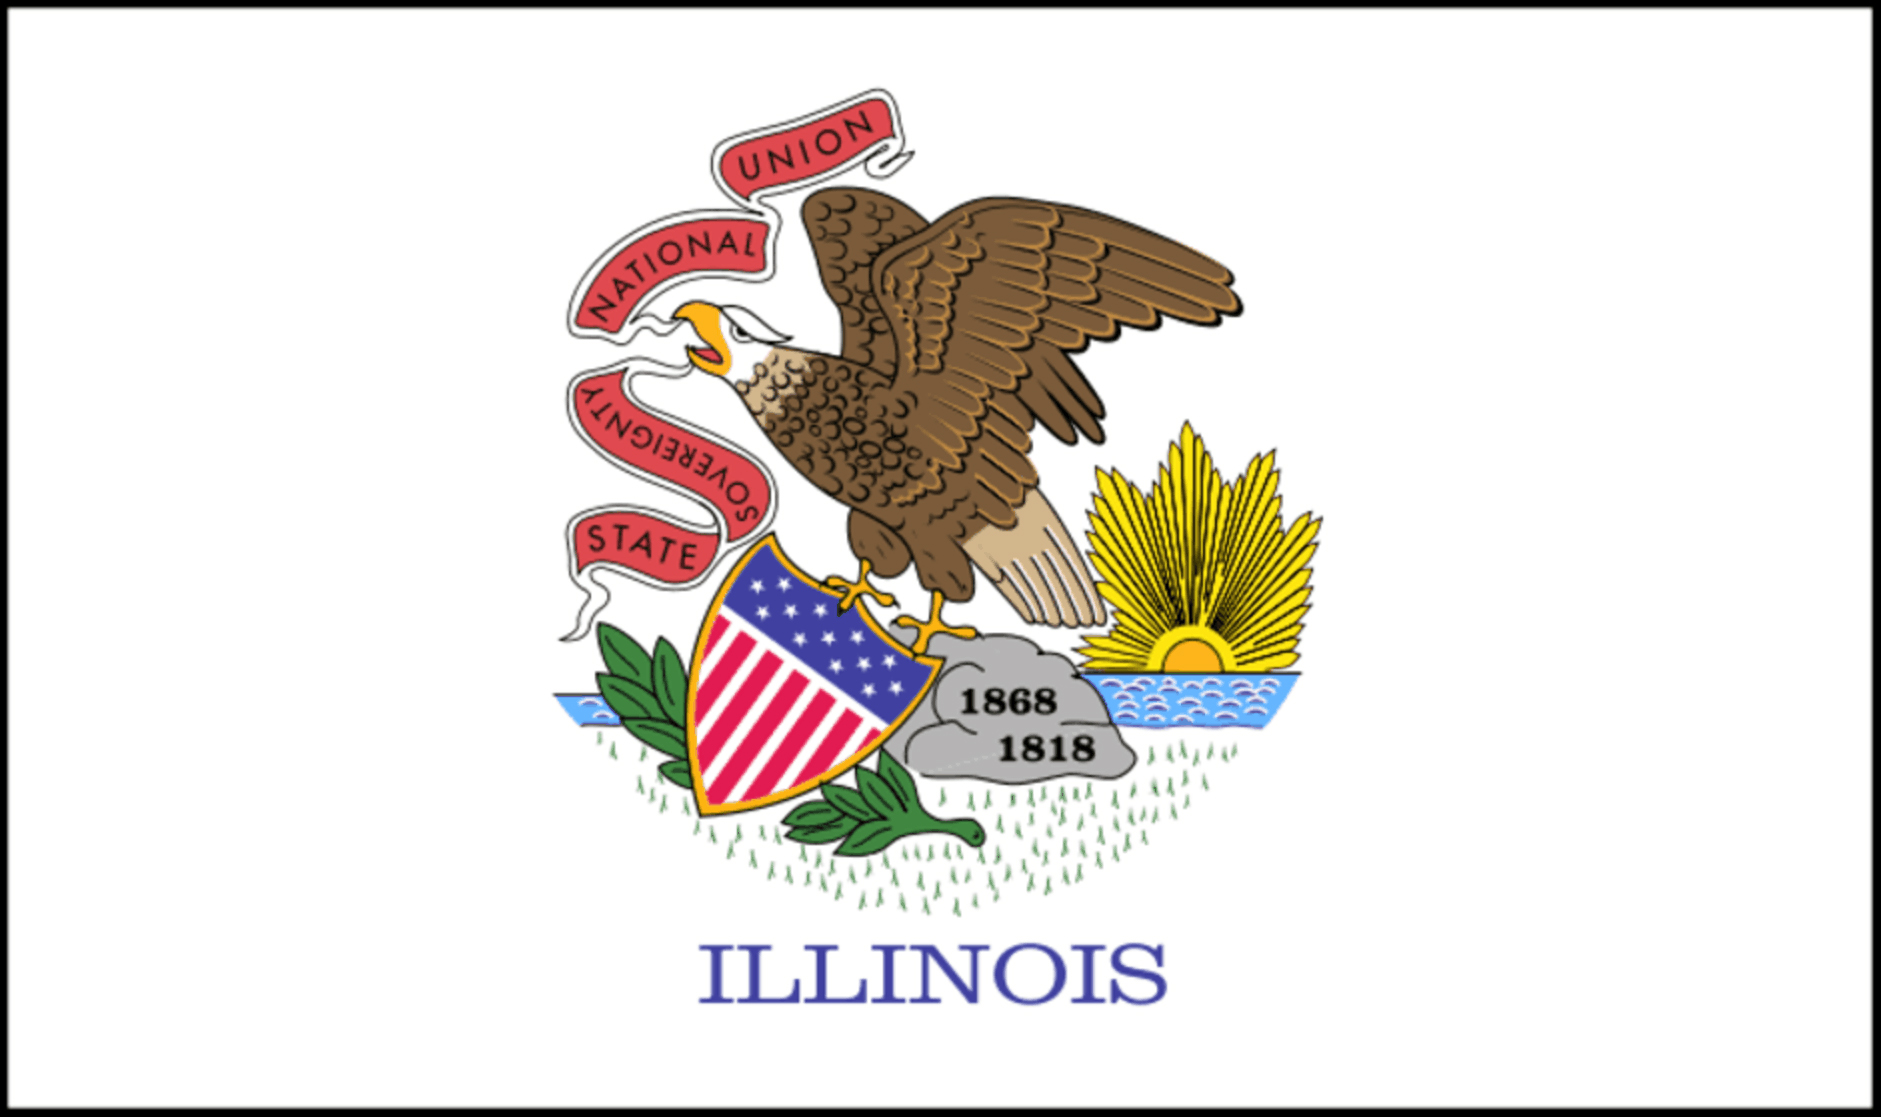 Državna zastava - Illinois - Tovarna zastav